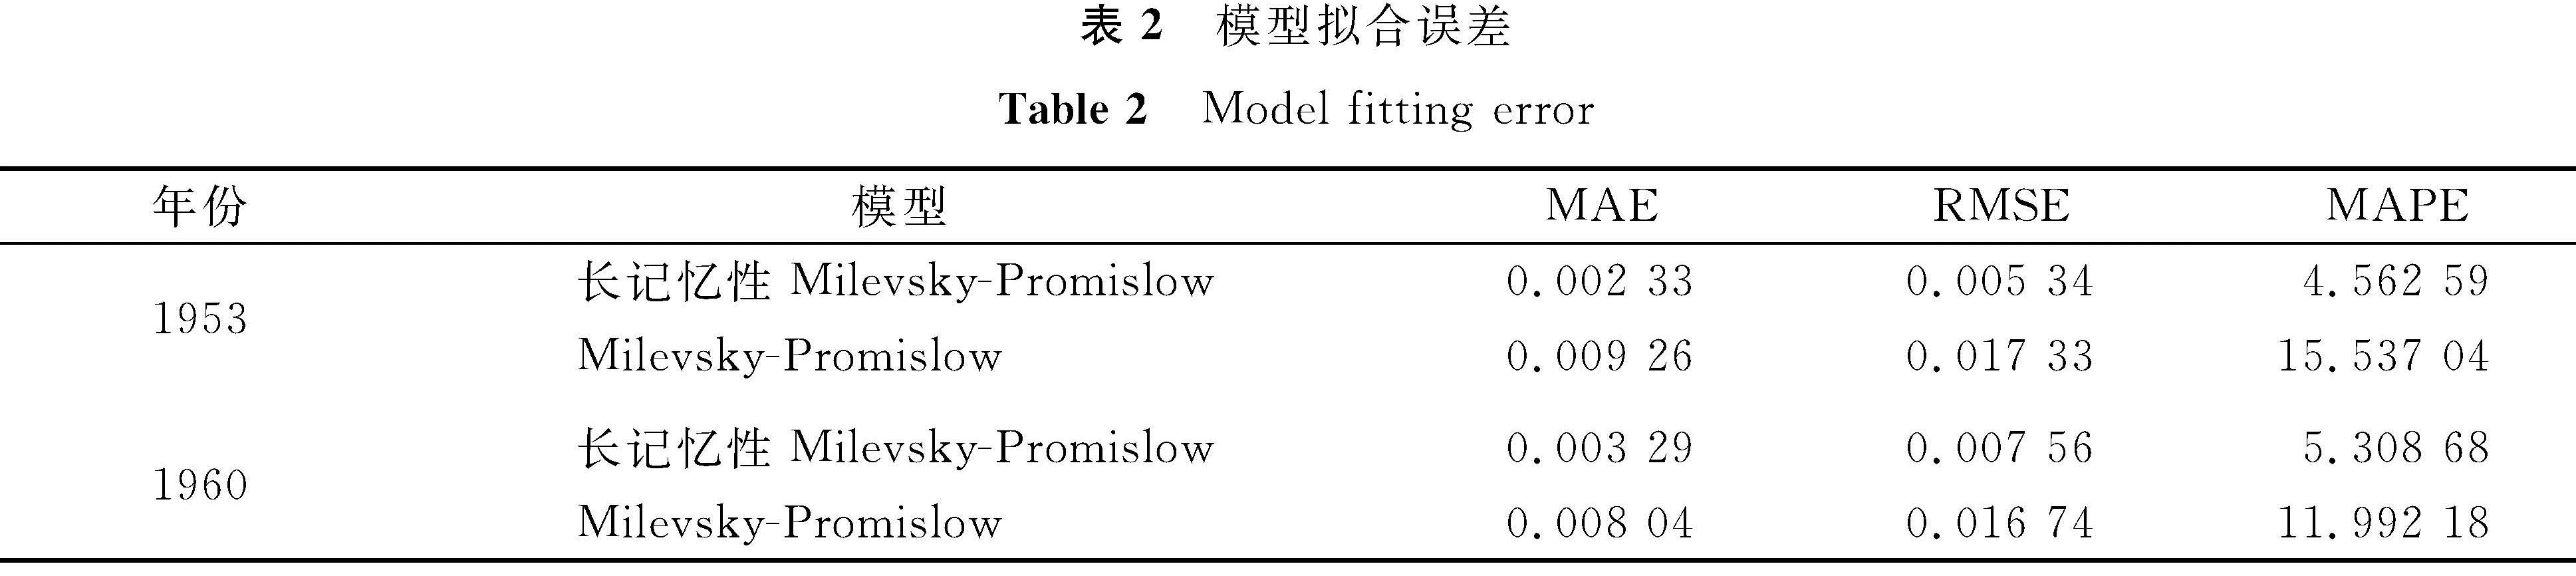 表2 模型拟合误差<br/>Table 2 Model fitting error